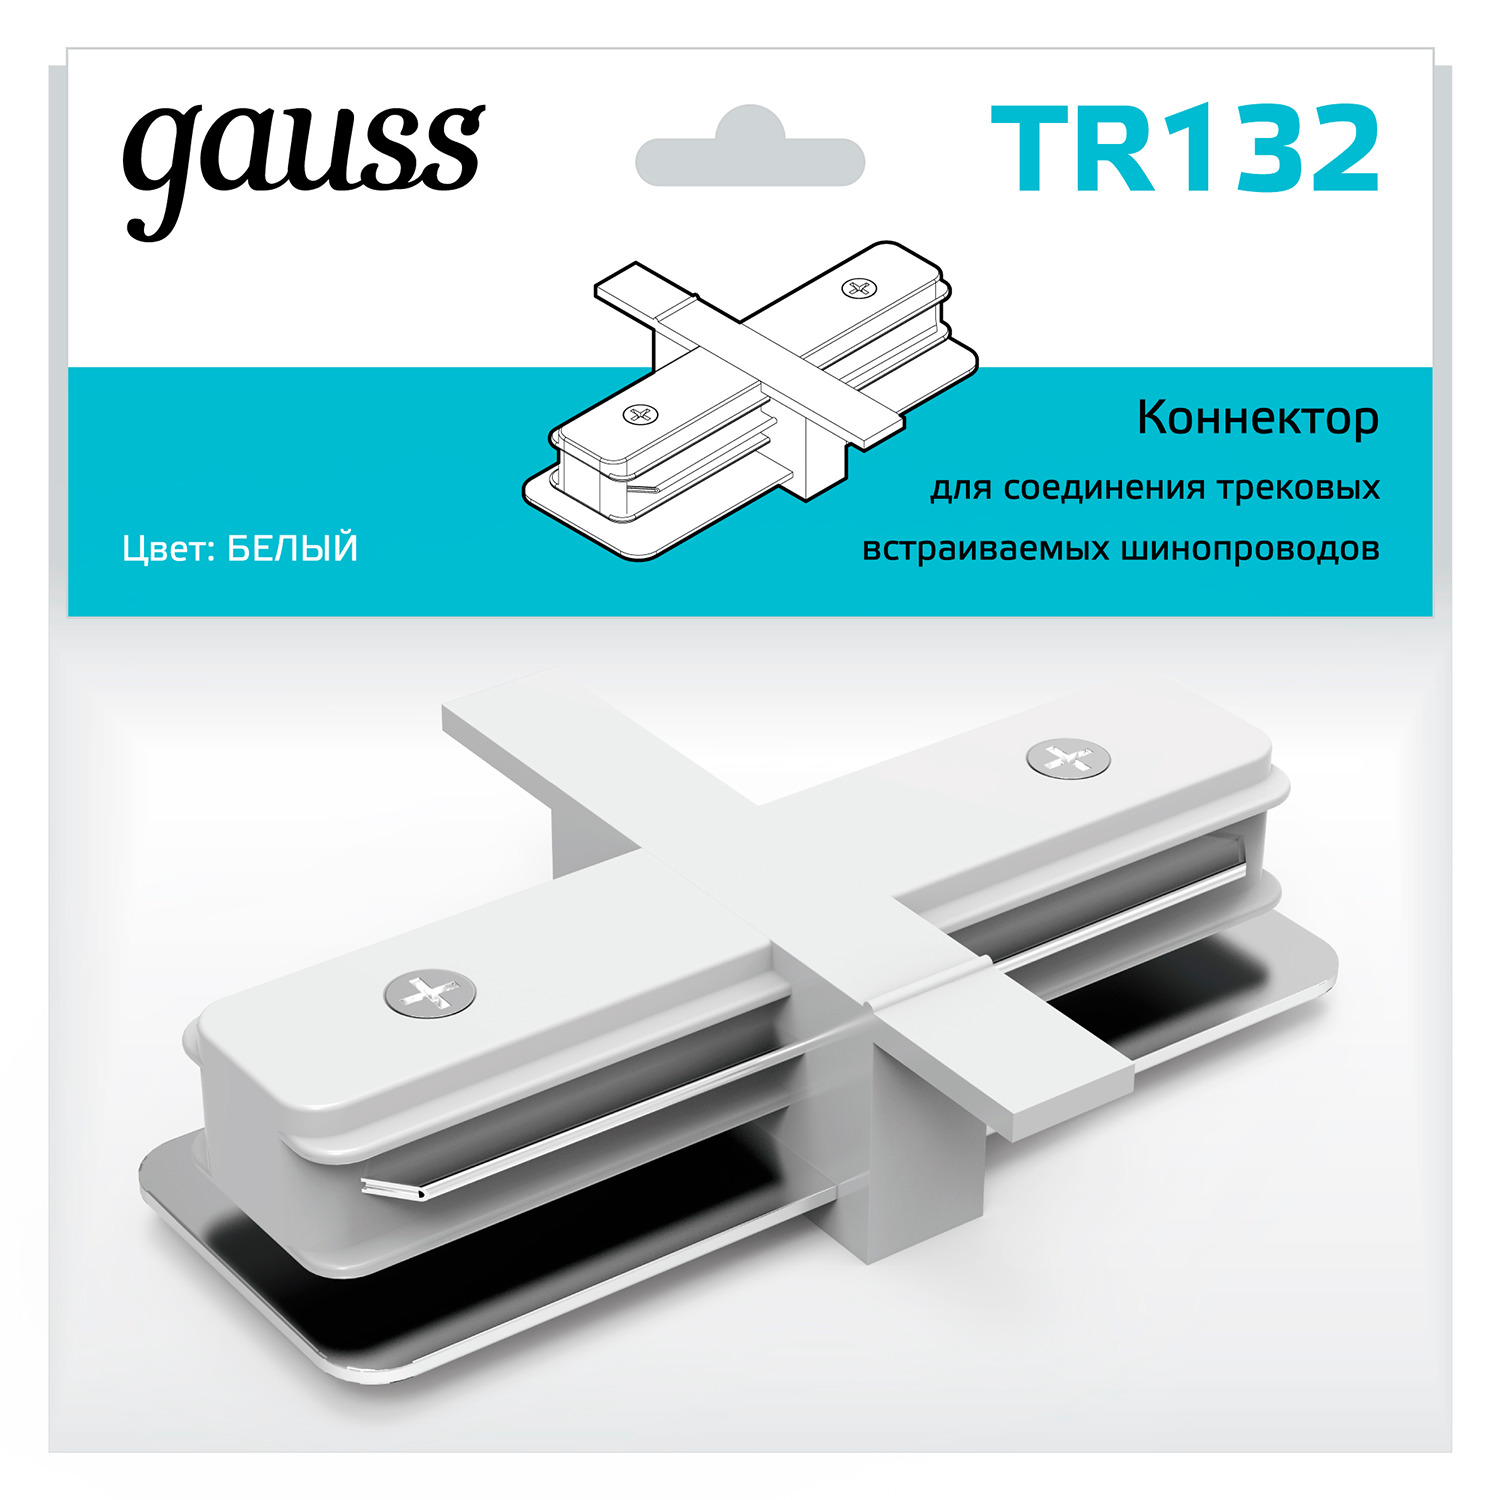 Коннектор Gauss для встраиваемых трековых шинопроводов прямой (I) белый коннектор gauss для встраиваемых трековых шинопроводов белый